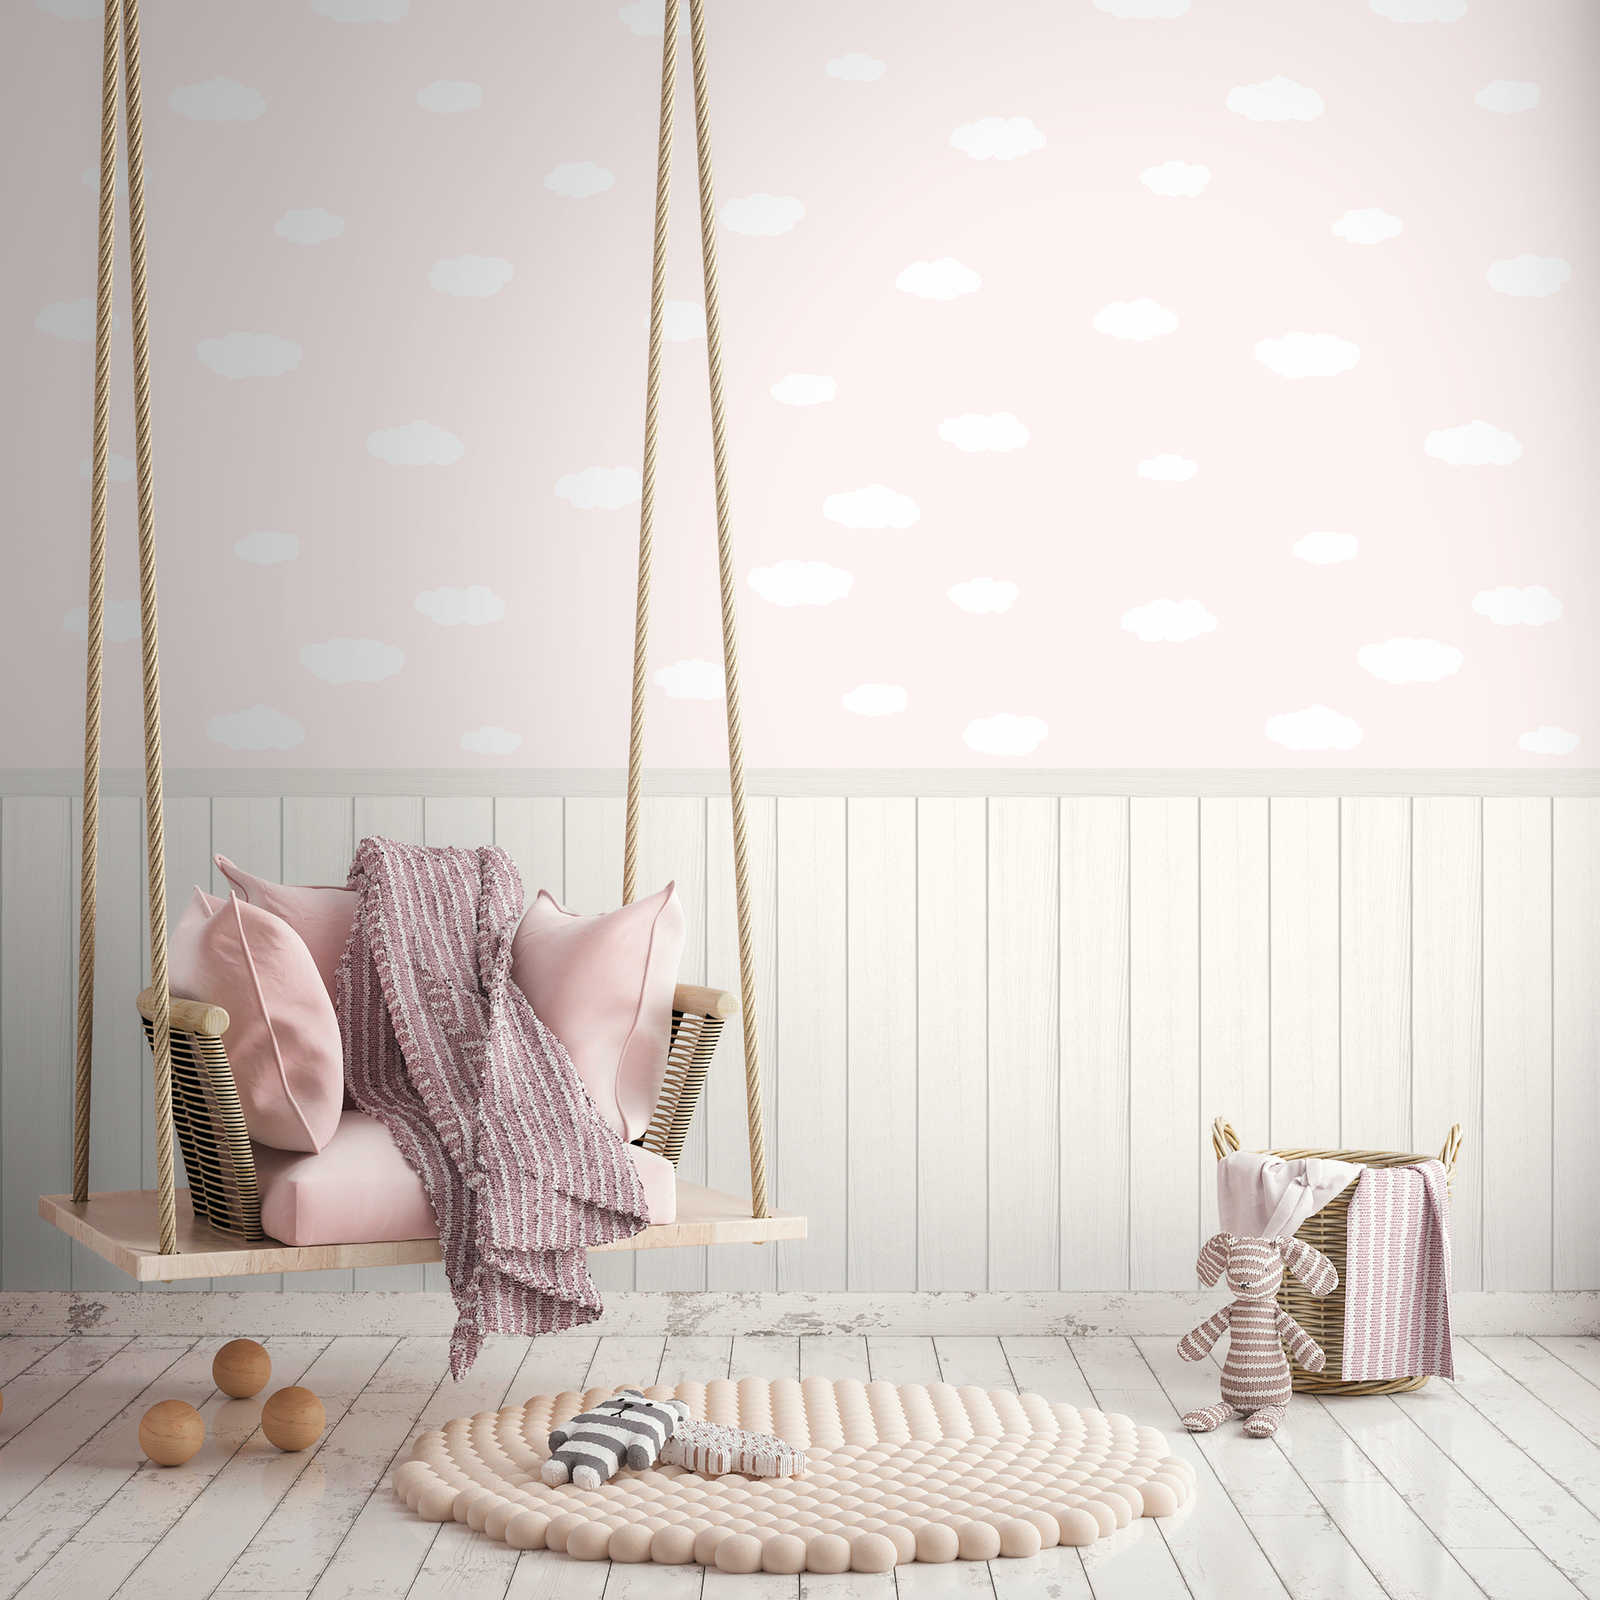 Onderlaag behang met vliesmotief, plintrand met houteffect en wolkenpatroon - roze, wit, grijs
